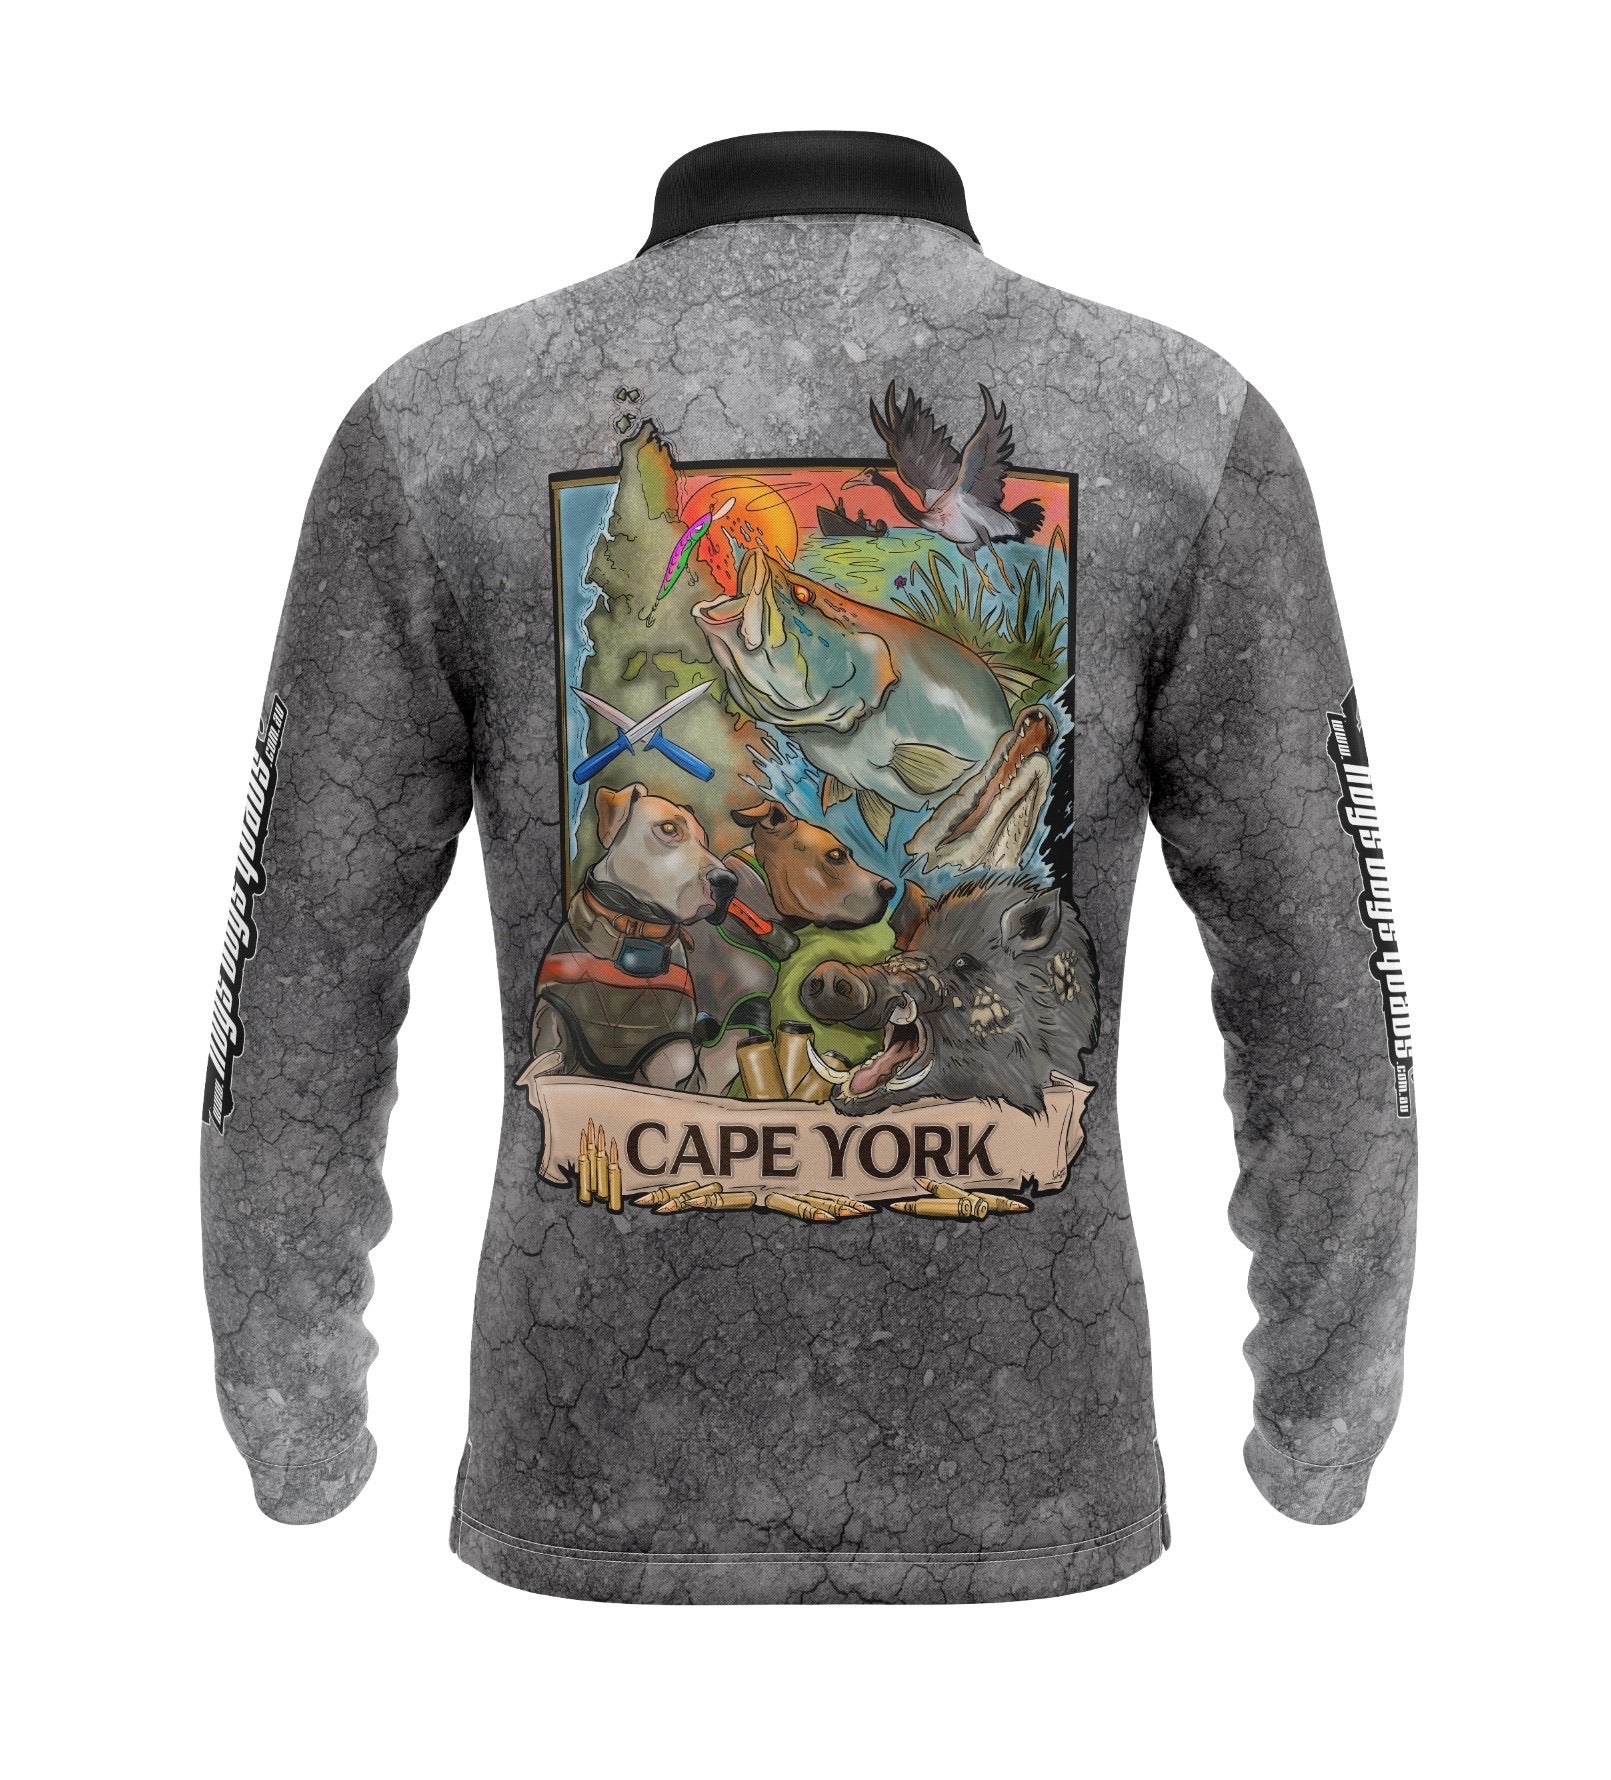 Cape York Long Sleeve Shirt - Hogs Dogs Quads Shop